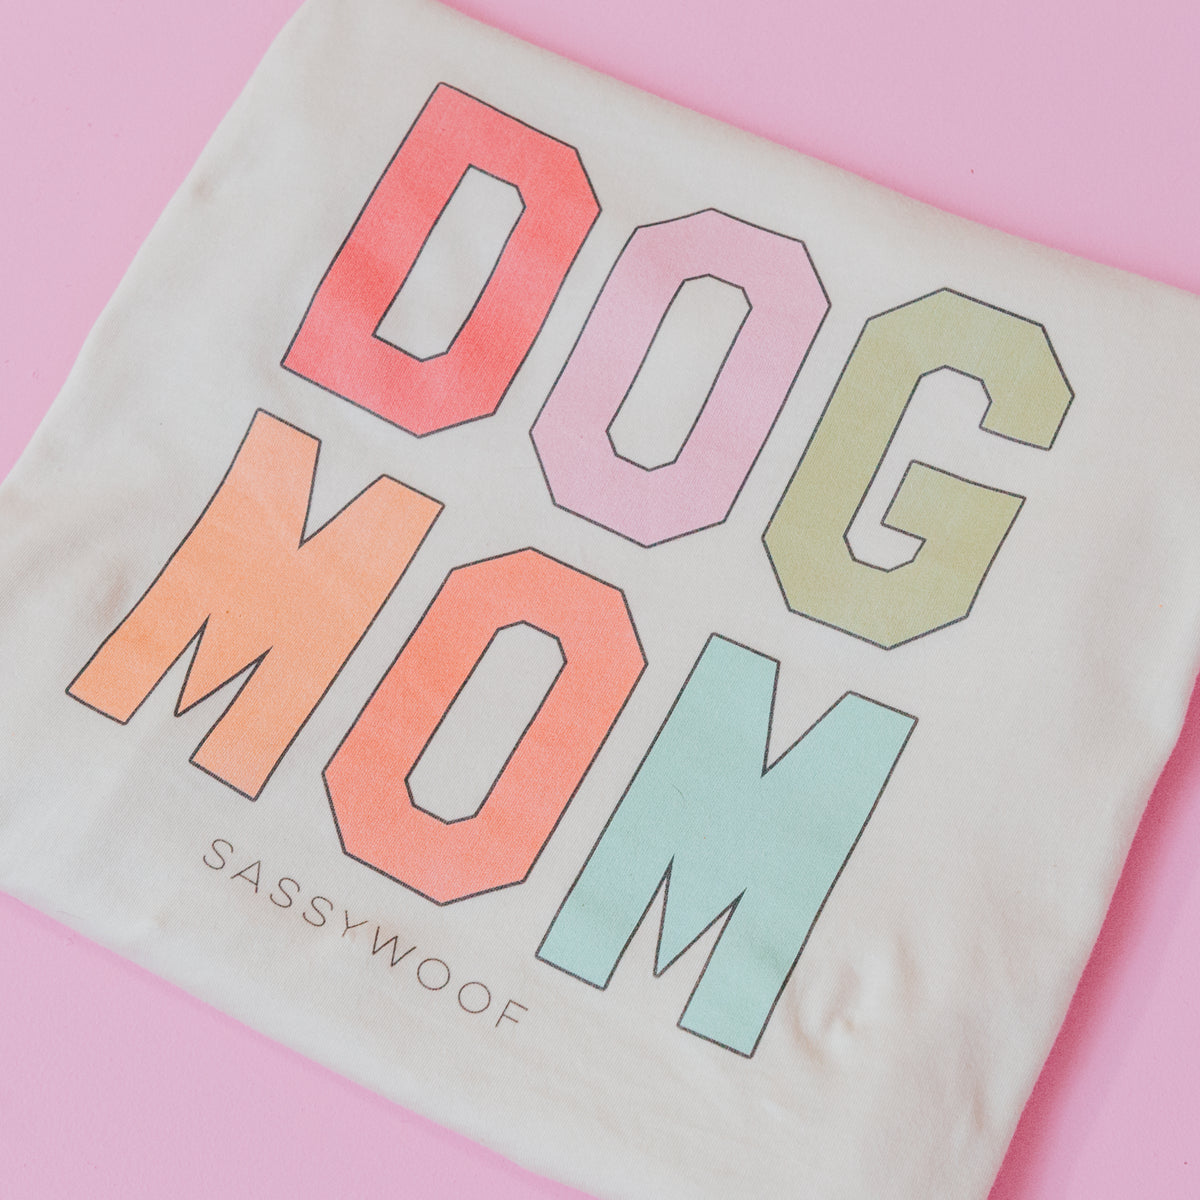 Family Tee - Dog Mom